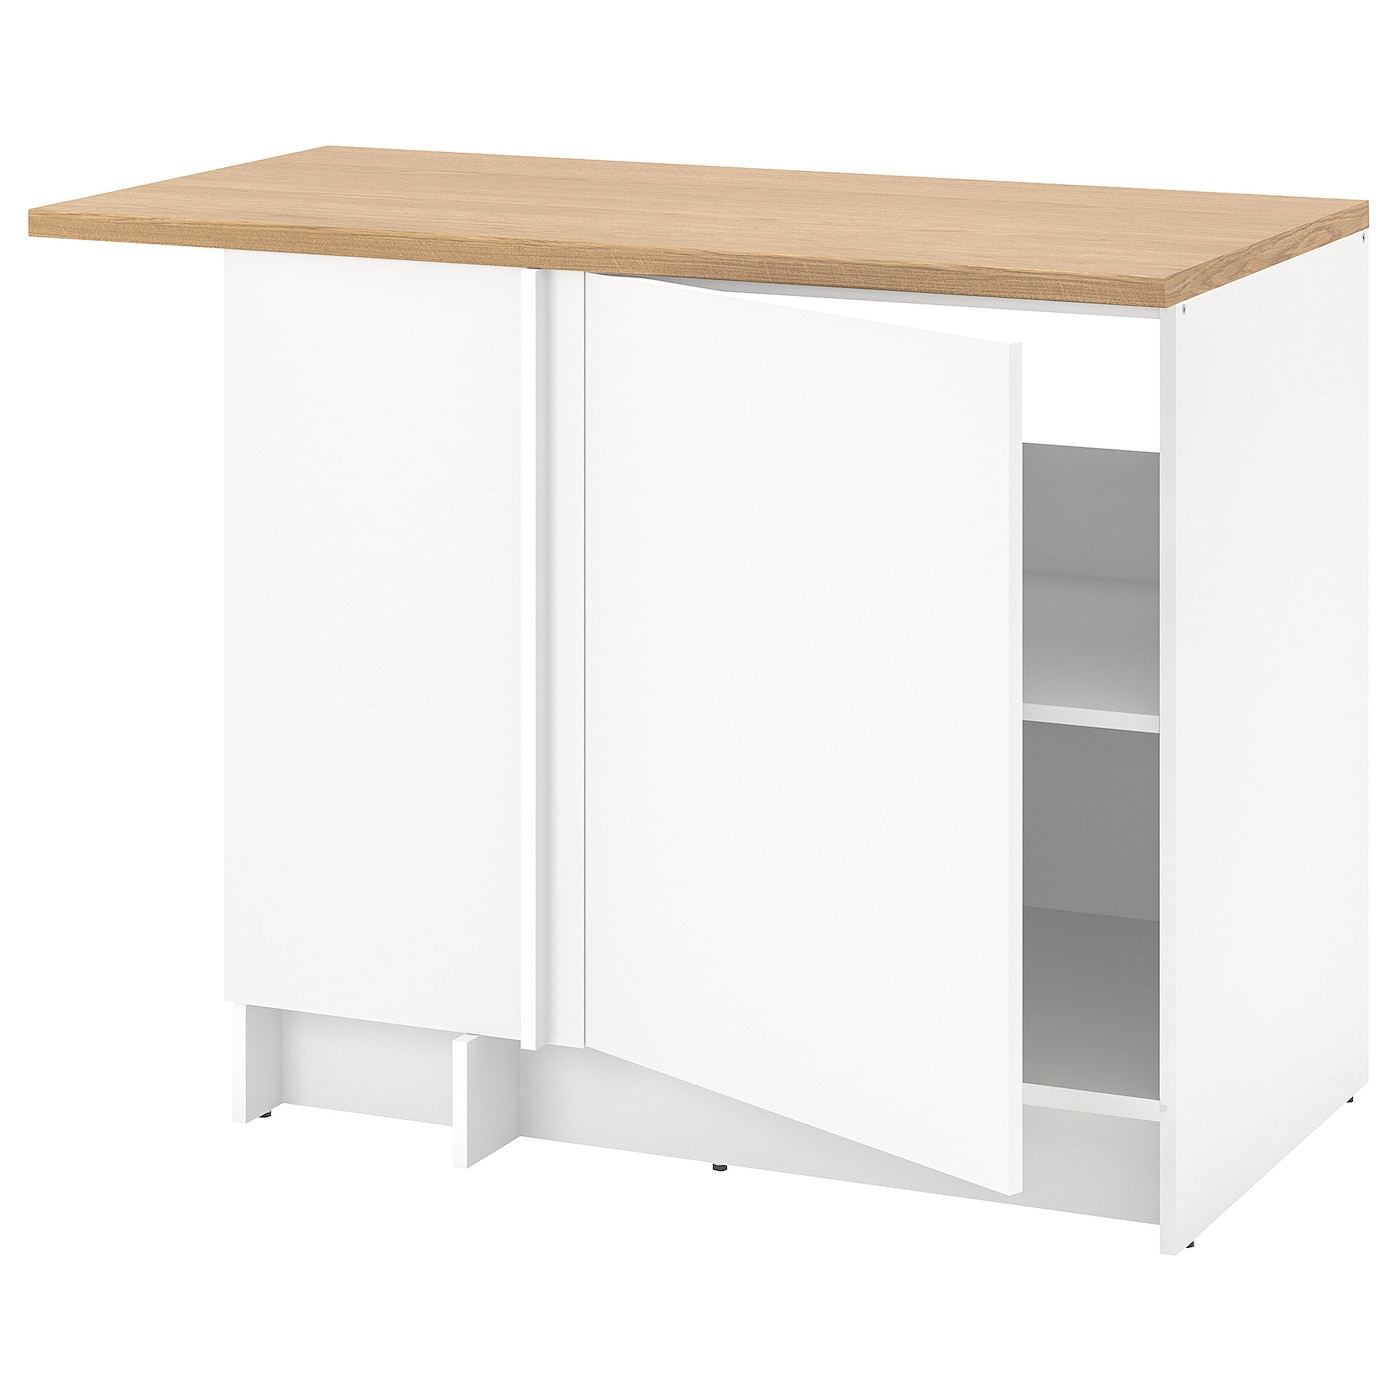 Напольный шкаф - IKEA METOD, 91x100см, белый/светло-коричневый, МЕТОД ИКЕА